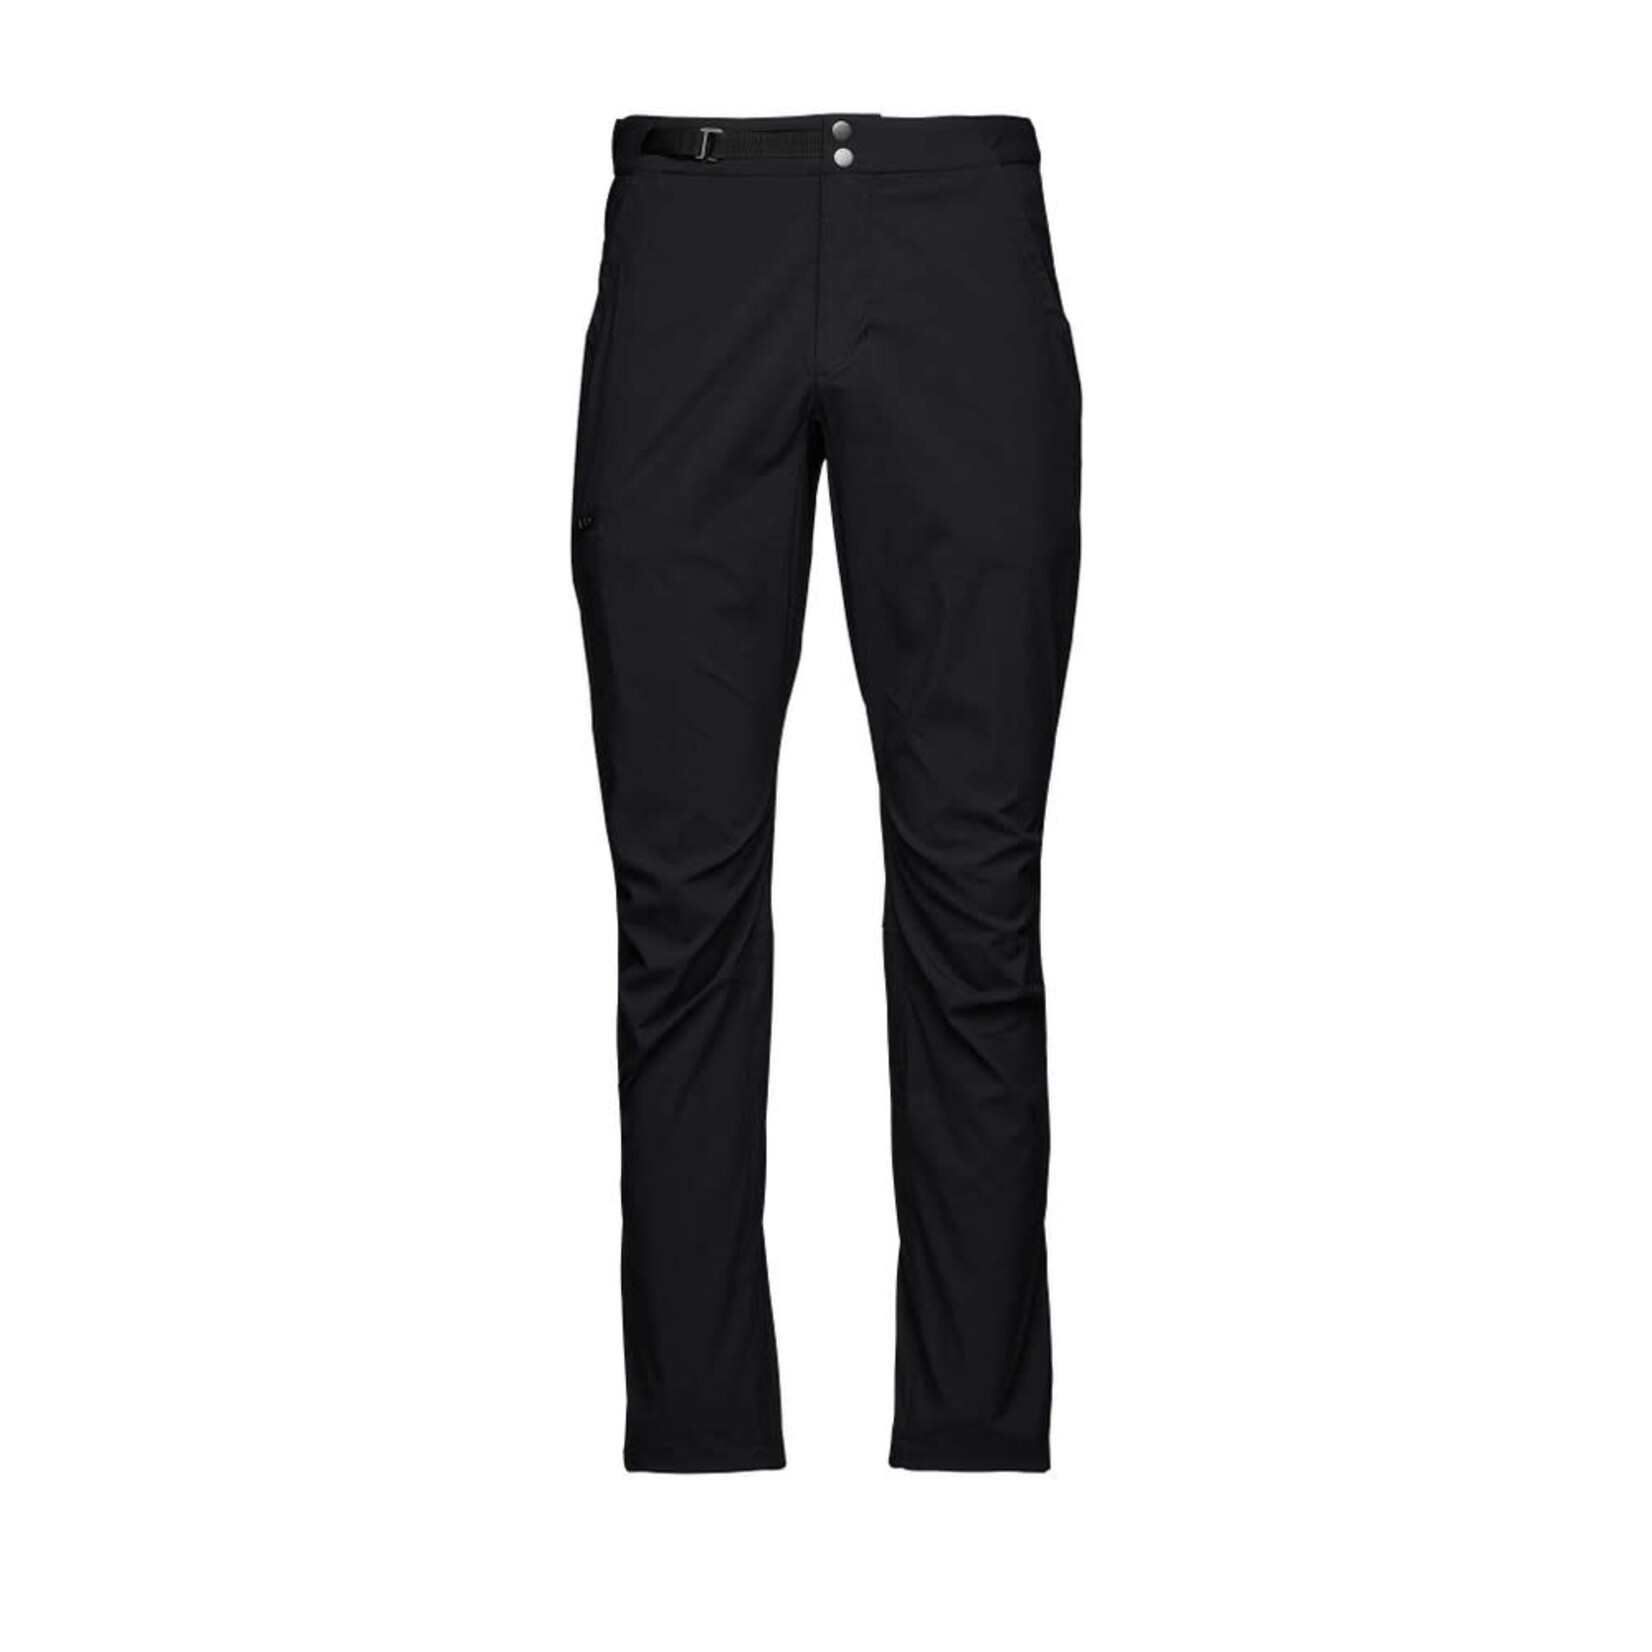 Black Diamond Technician Alpine Pants (pantalons pour homme)